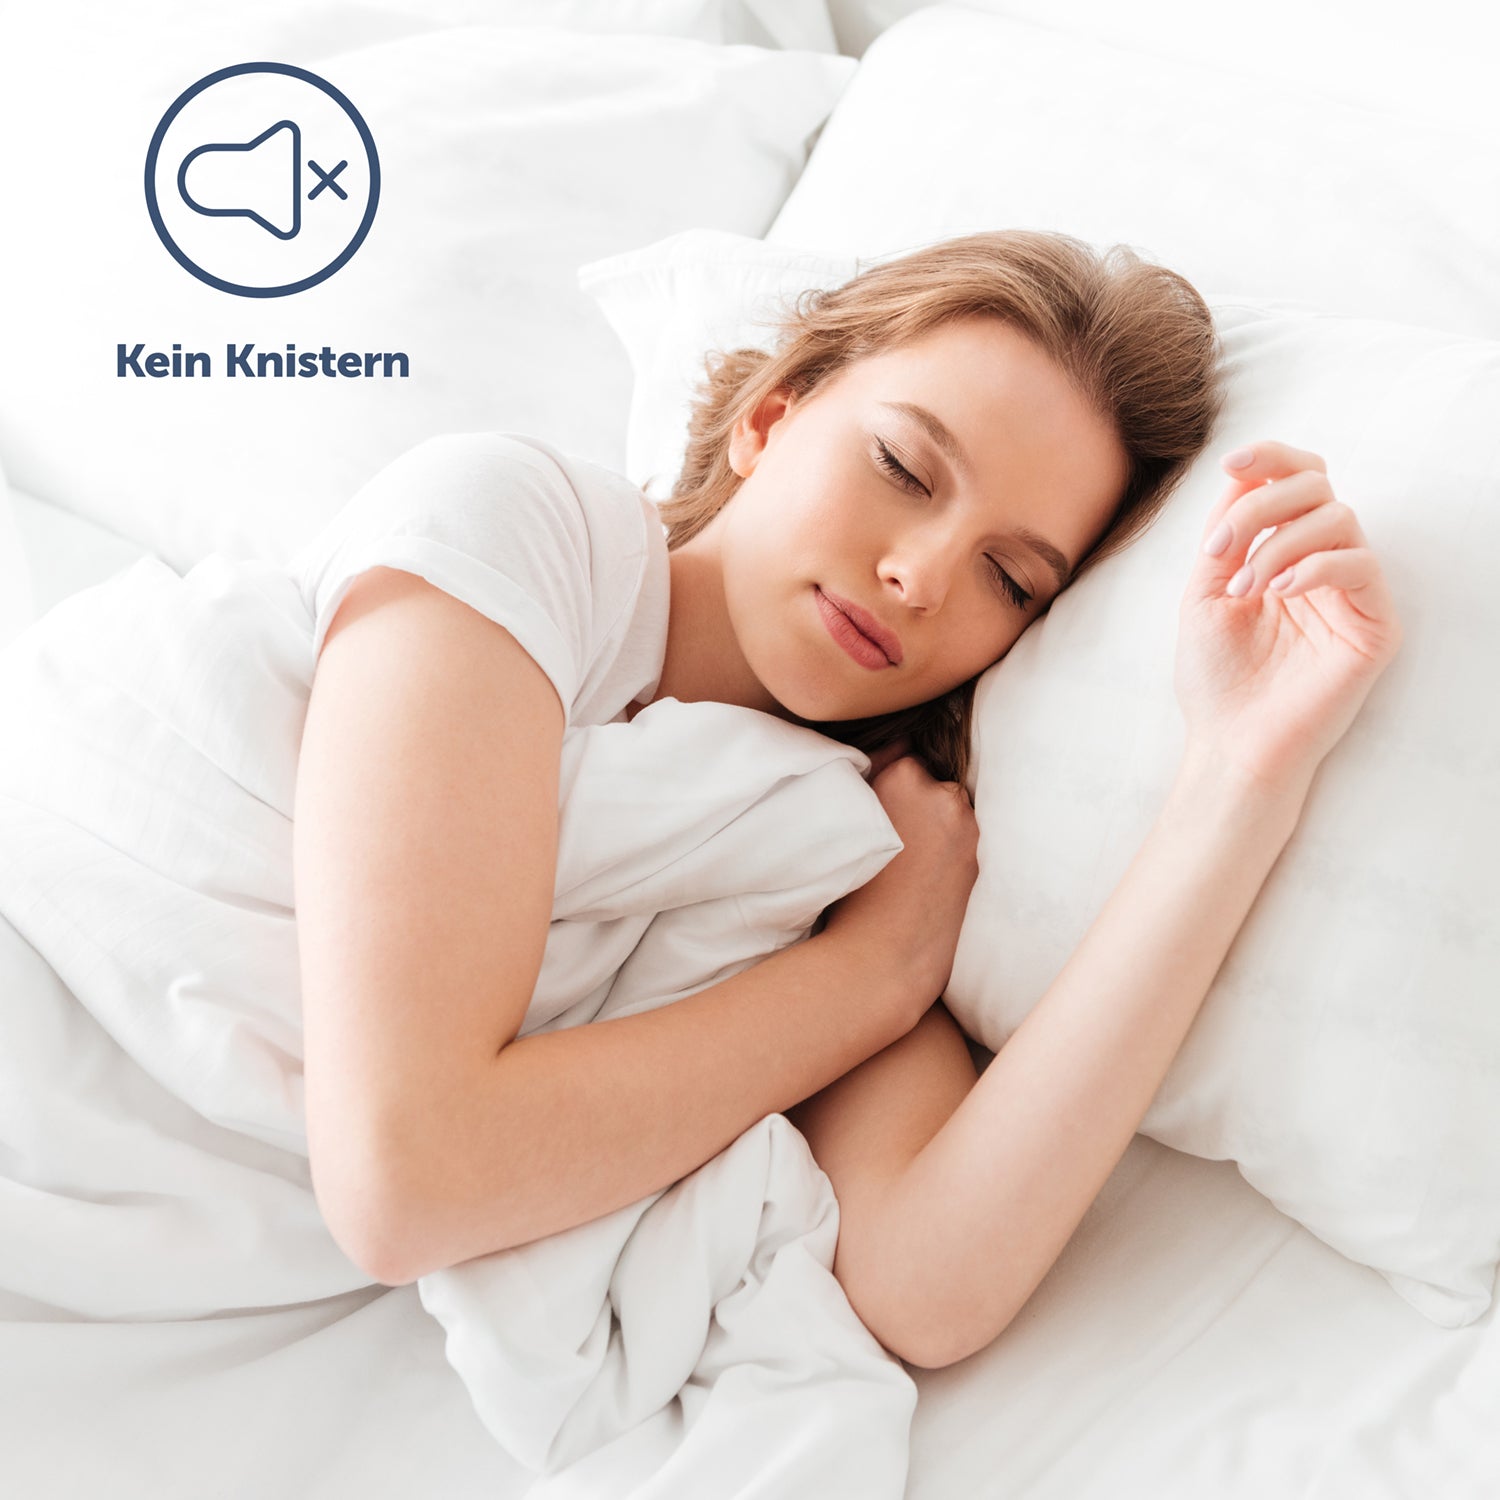 Junge Frau die auf einem mit dem Matratzenbezug bezogenen Bett schläft mit dem Hinweis 'Kein Knistern' für hohen Schlafkomfort.